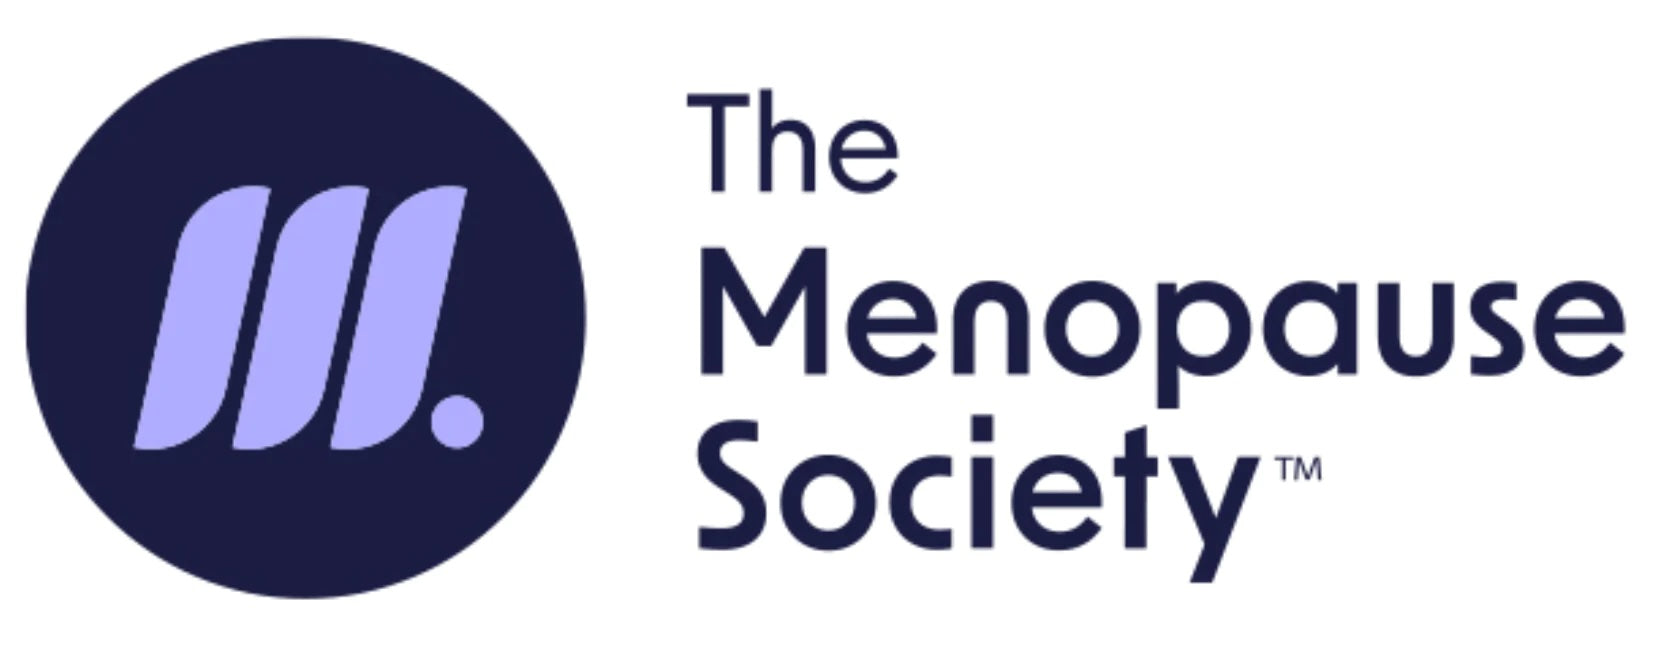 The Menopause Society logo